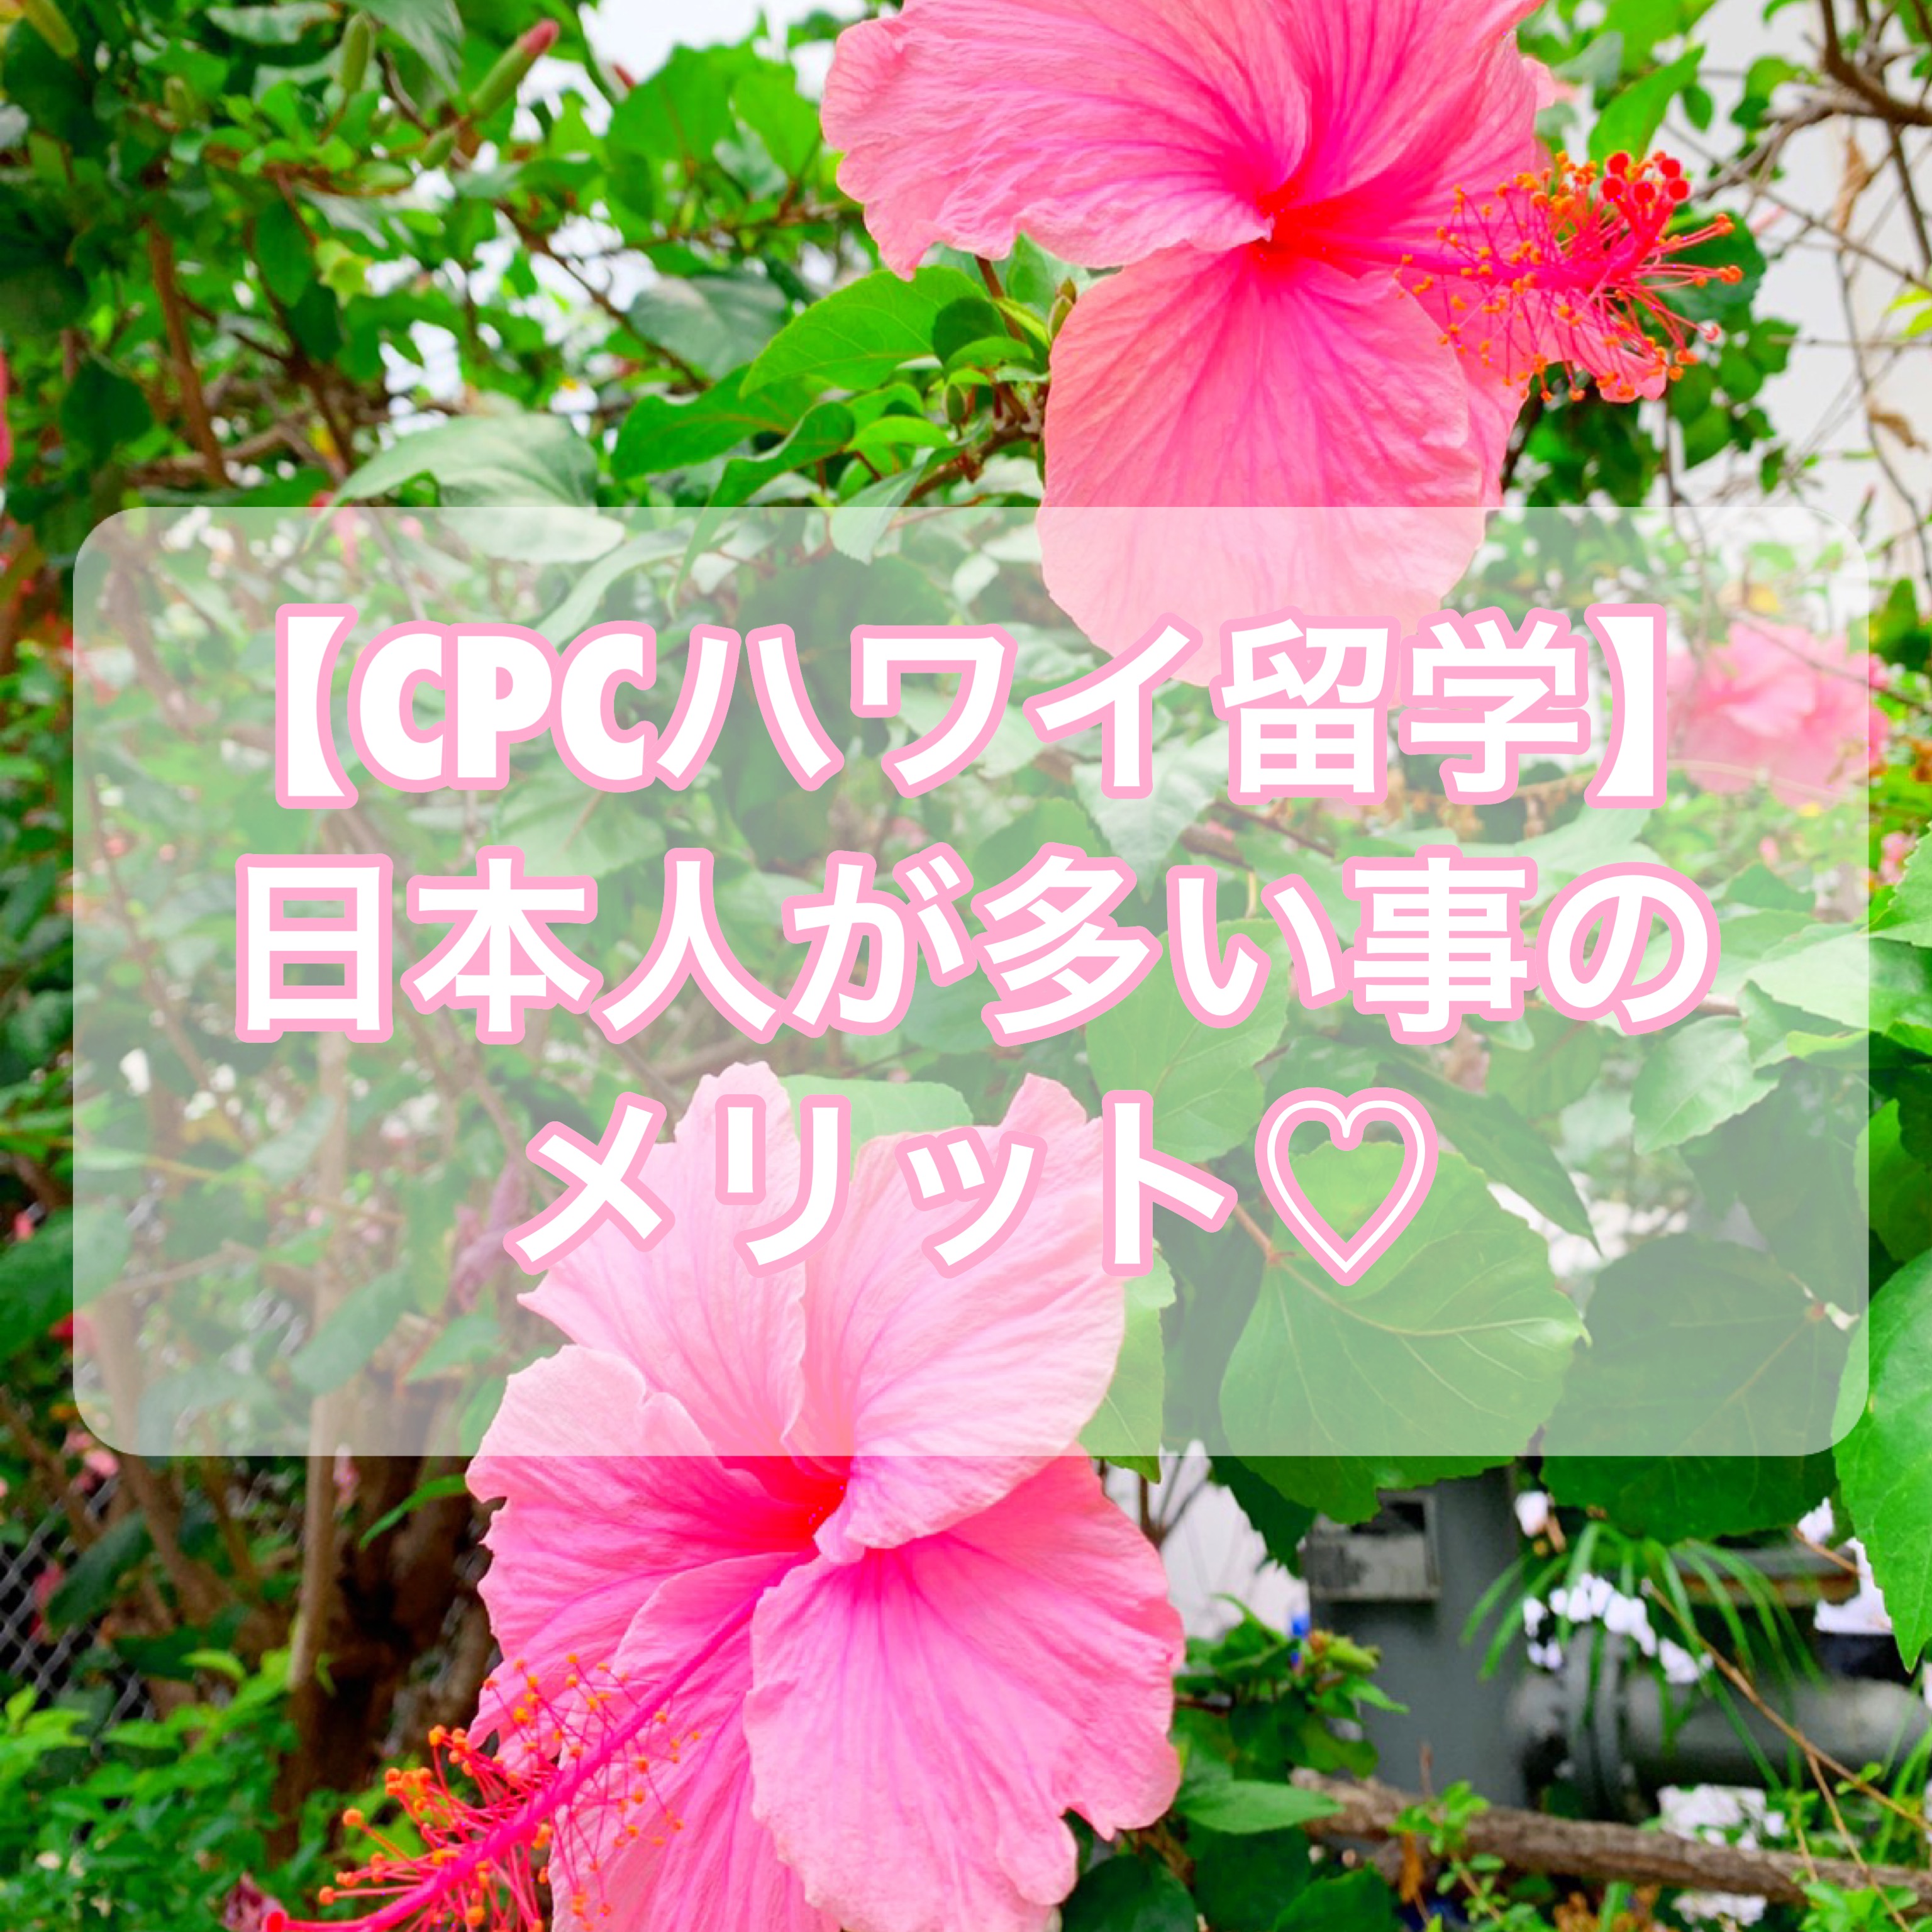 【CPCハワイ留学】語学学校に日本人が多い環境のメリット【ベストな理由】